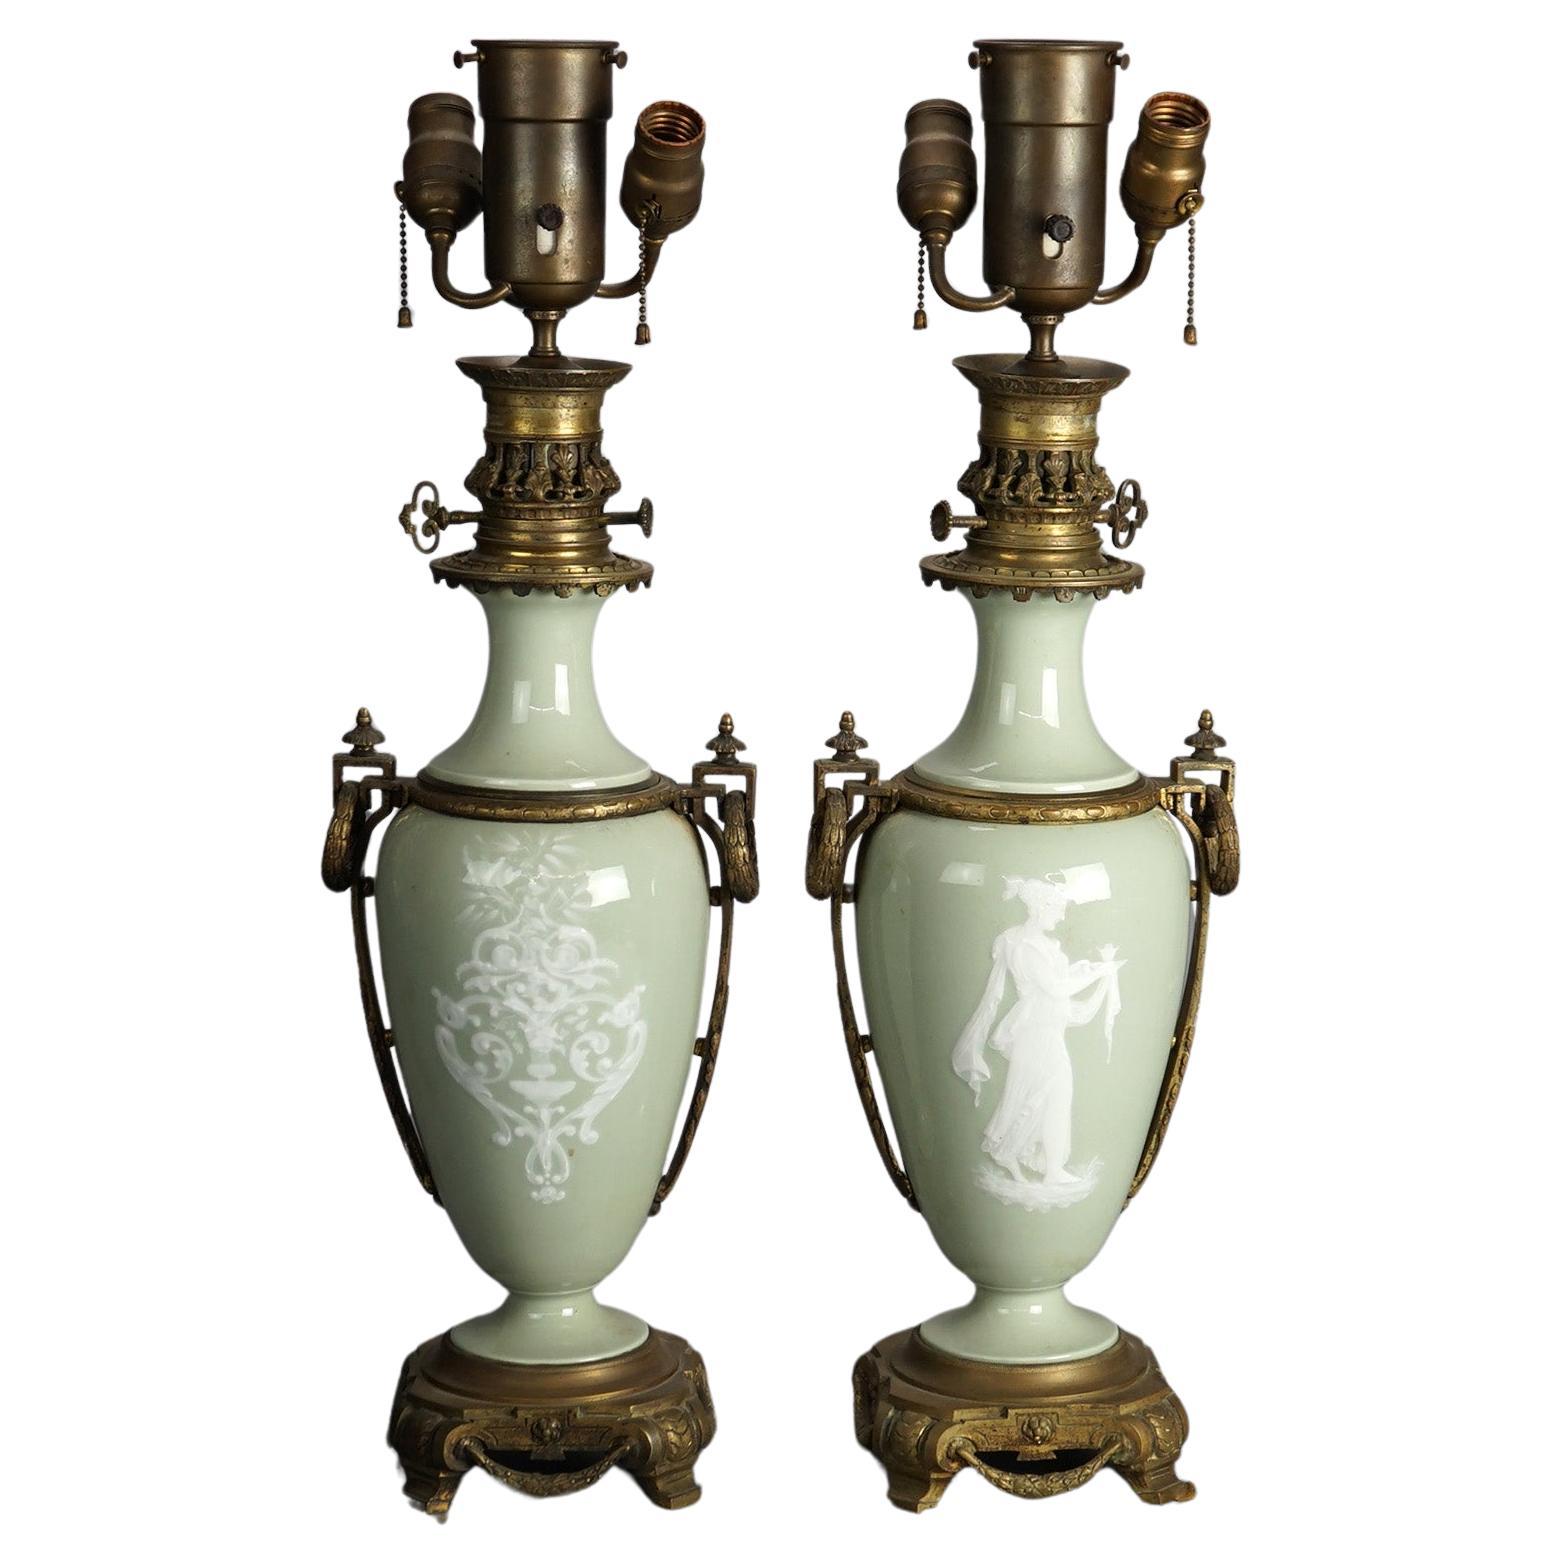 Antike Paar Französisch Cameo Triple-Sockel Tischlampen mit vergoldeten Blattwerk gegossen Bronze Sockel und Halterungen mit Celadon Porzellan Urn Form Fonts mit Figuren, CIRCA 1920

Maße: 31,5''H x 9,5''B x 6''D